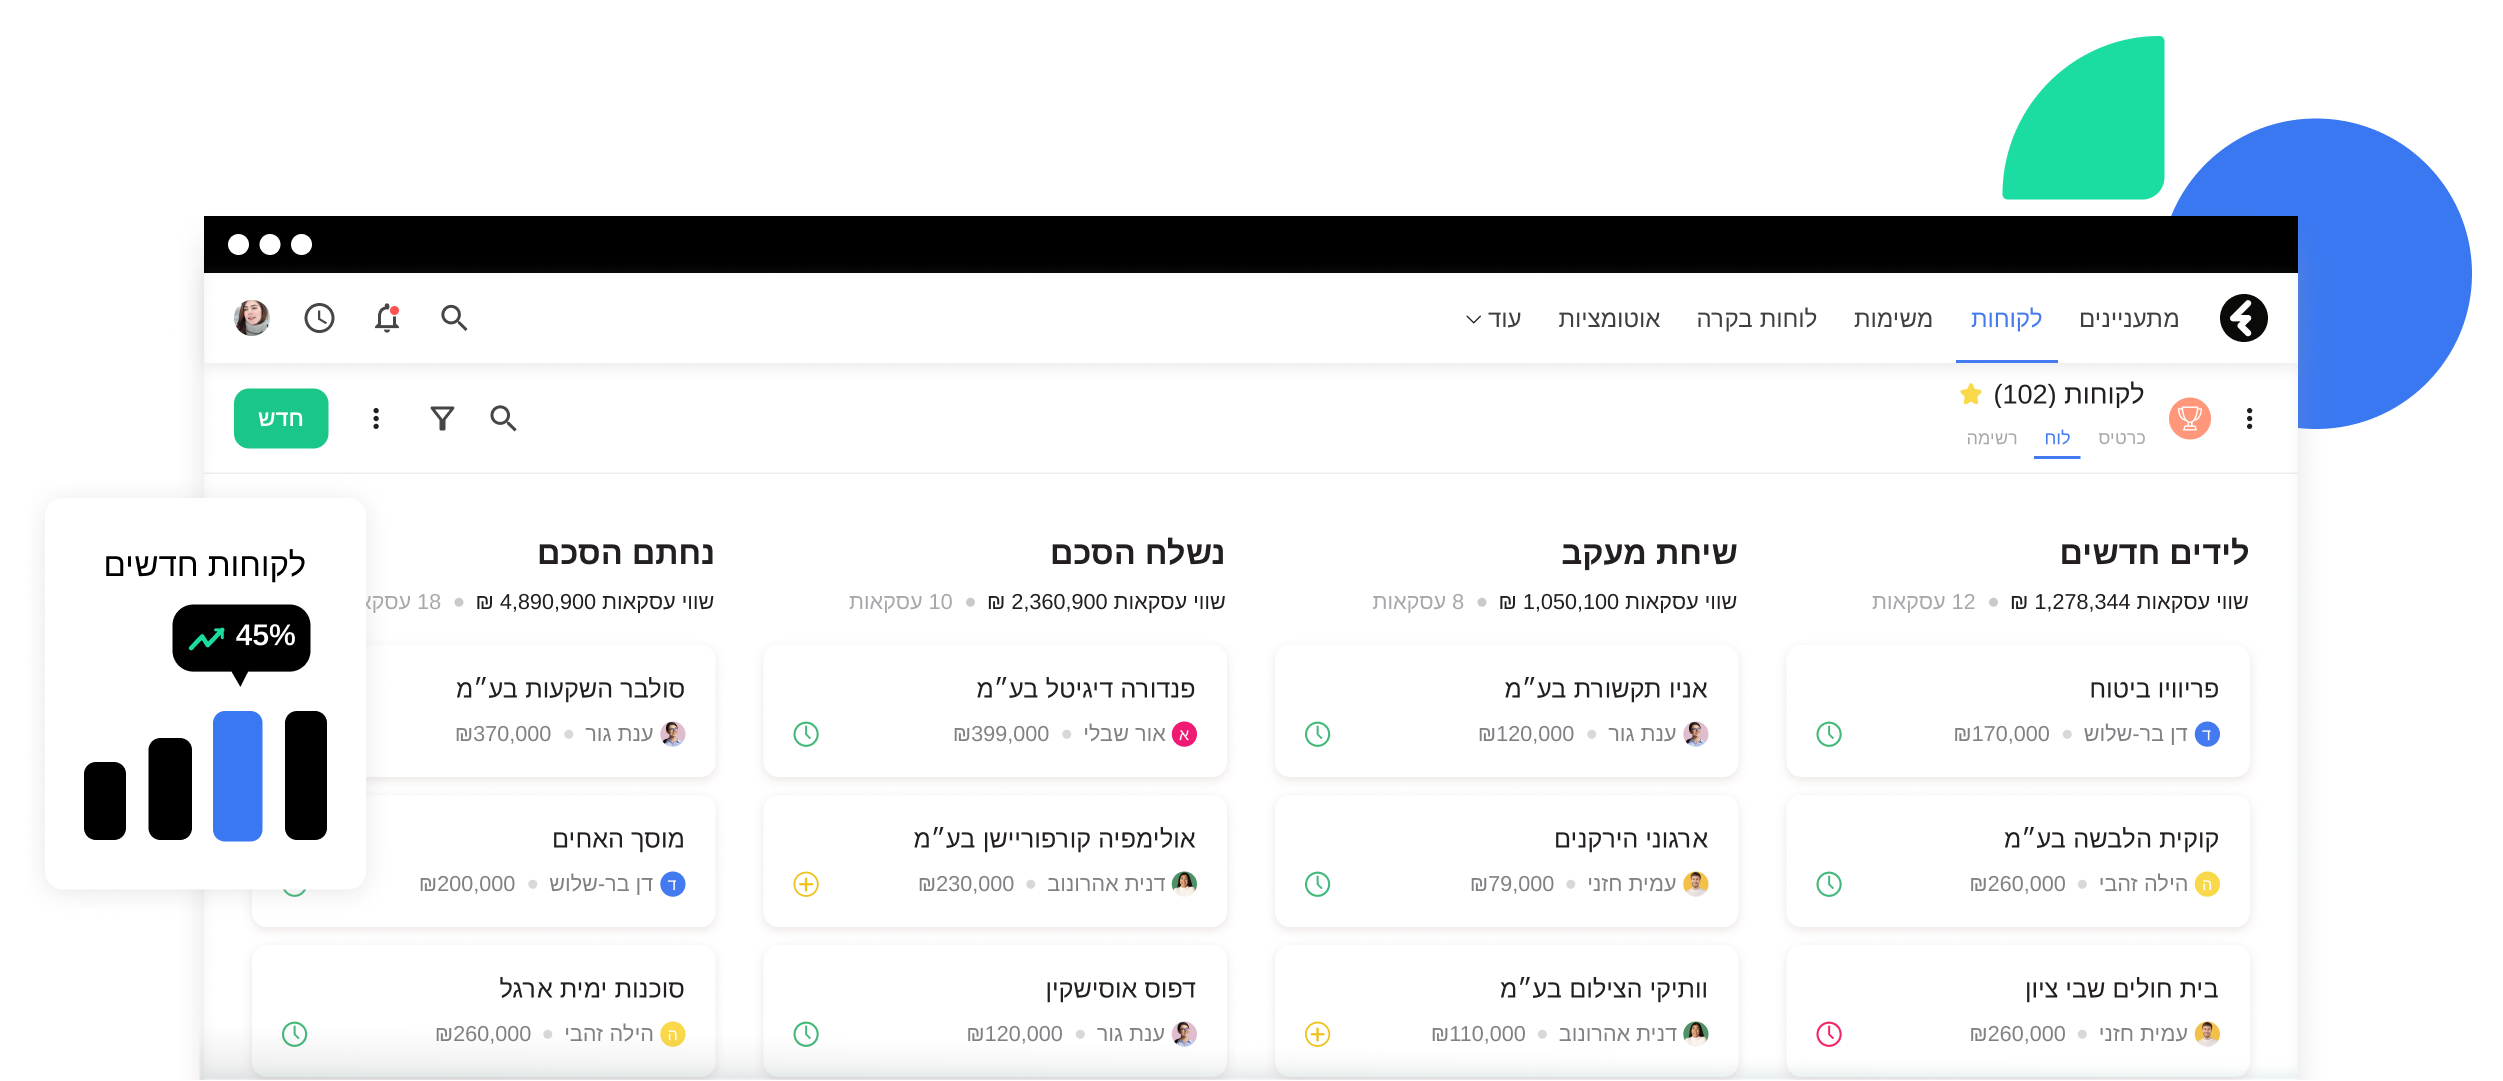 מערכת ניהול הלקוחות המובילה בישראל